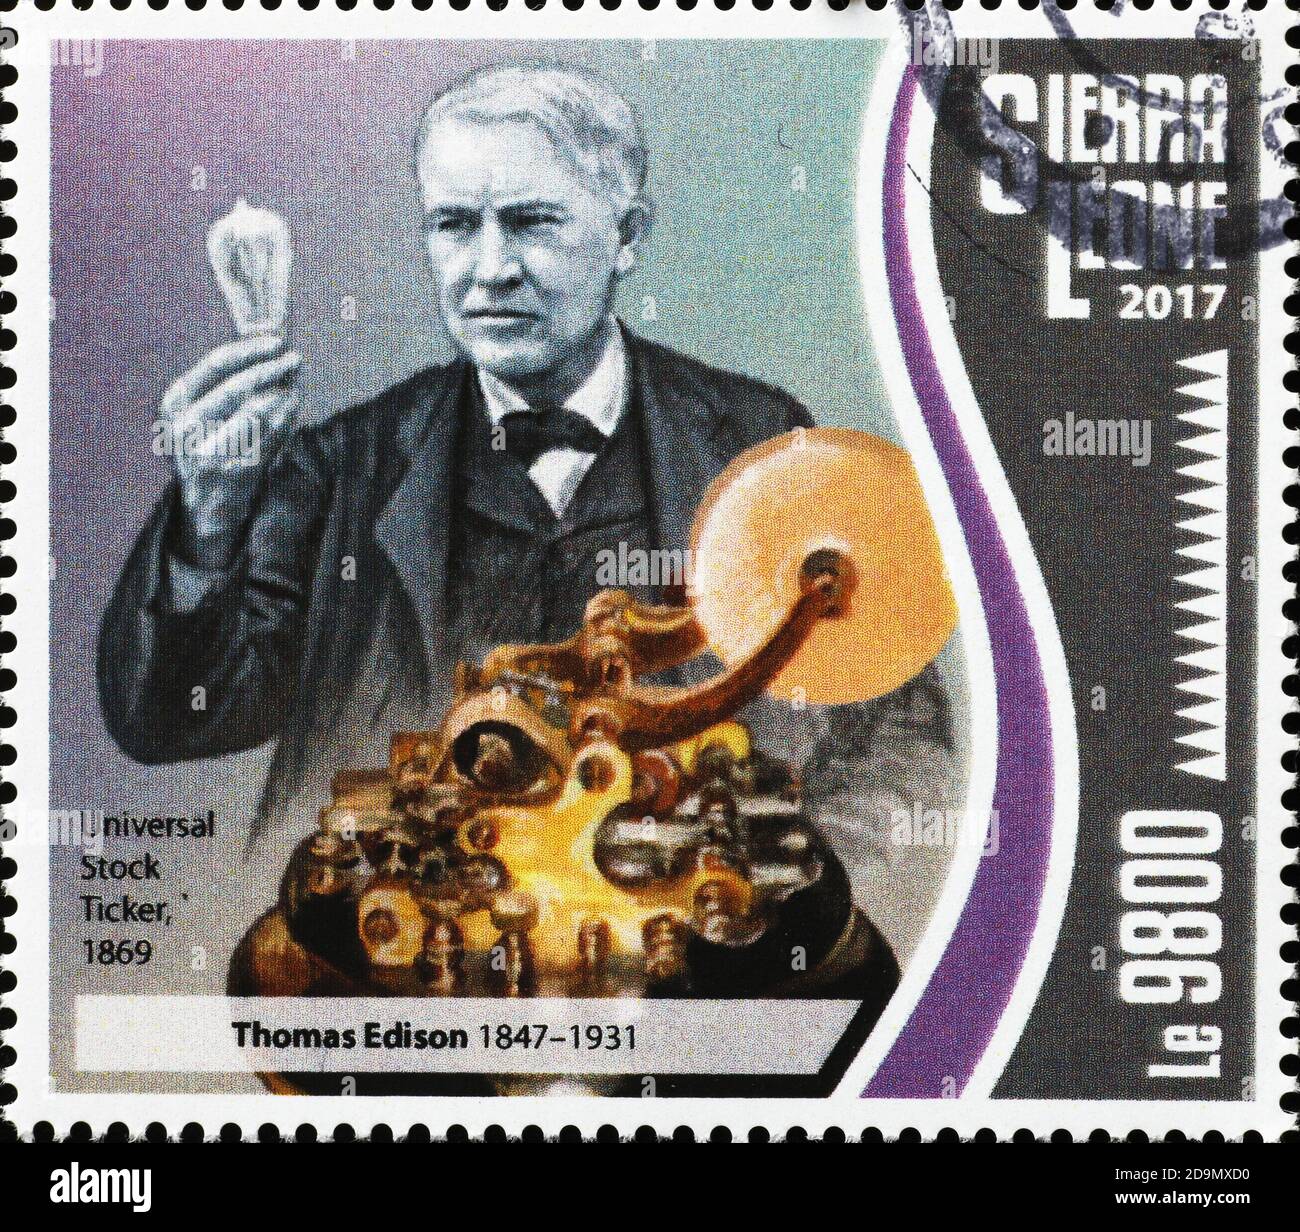 Universal Stock Ticker Erfindung von thomas Edison auf Briefmarke Stockfoto